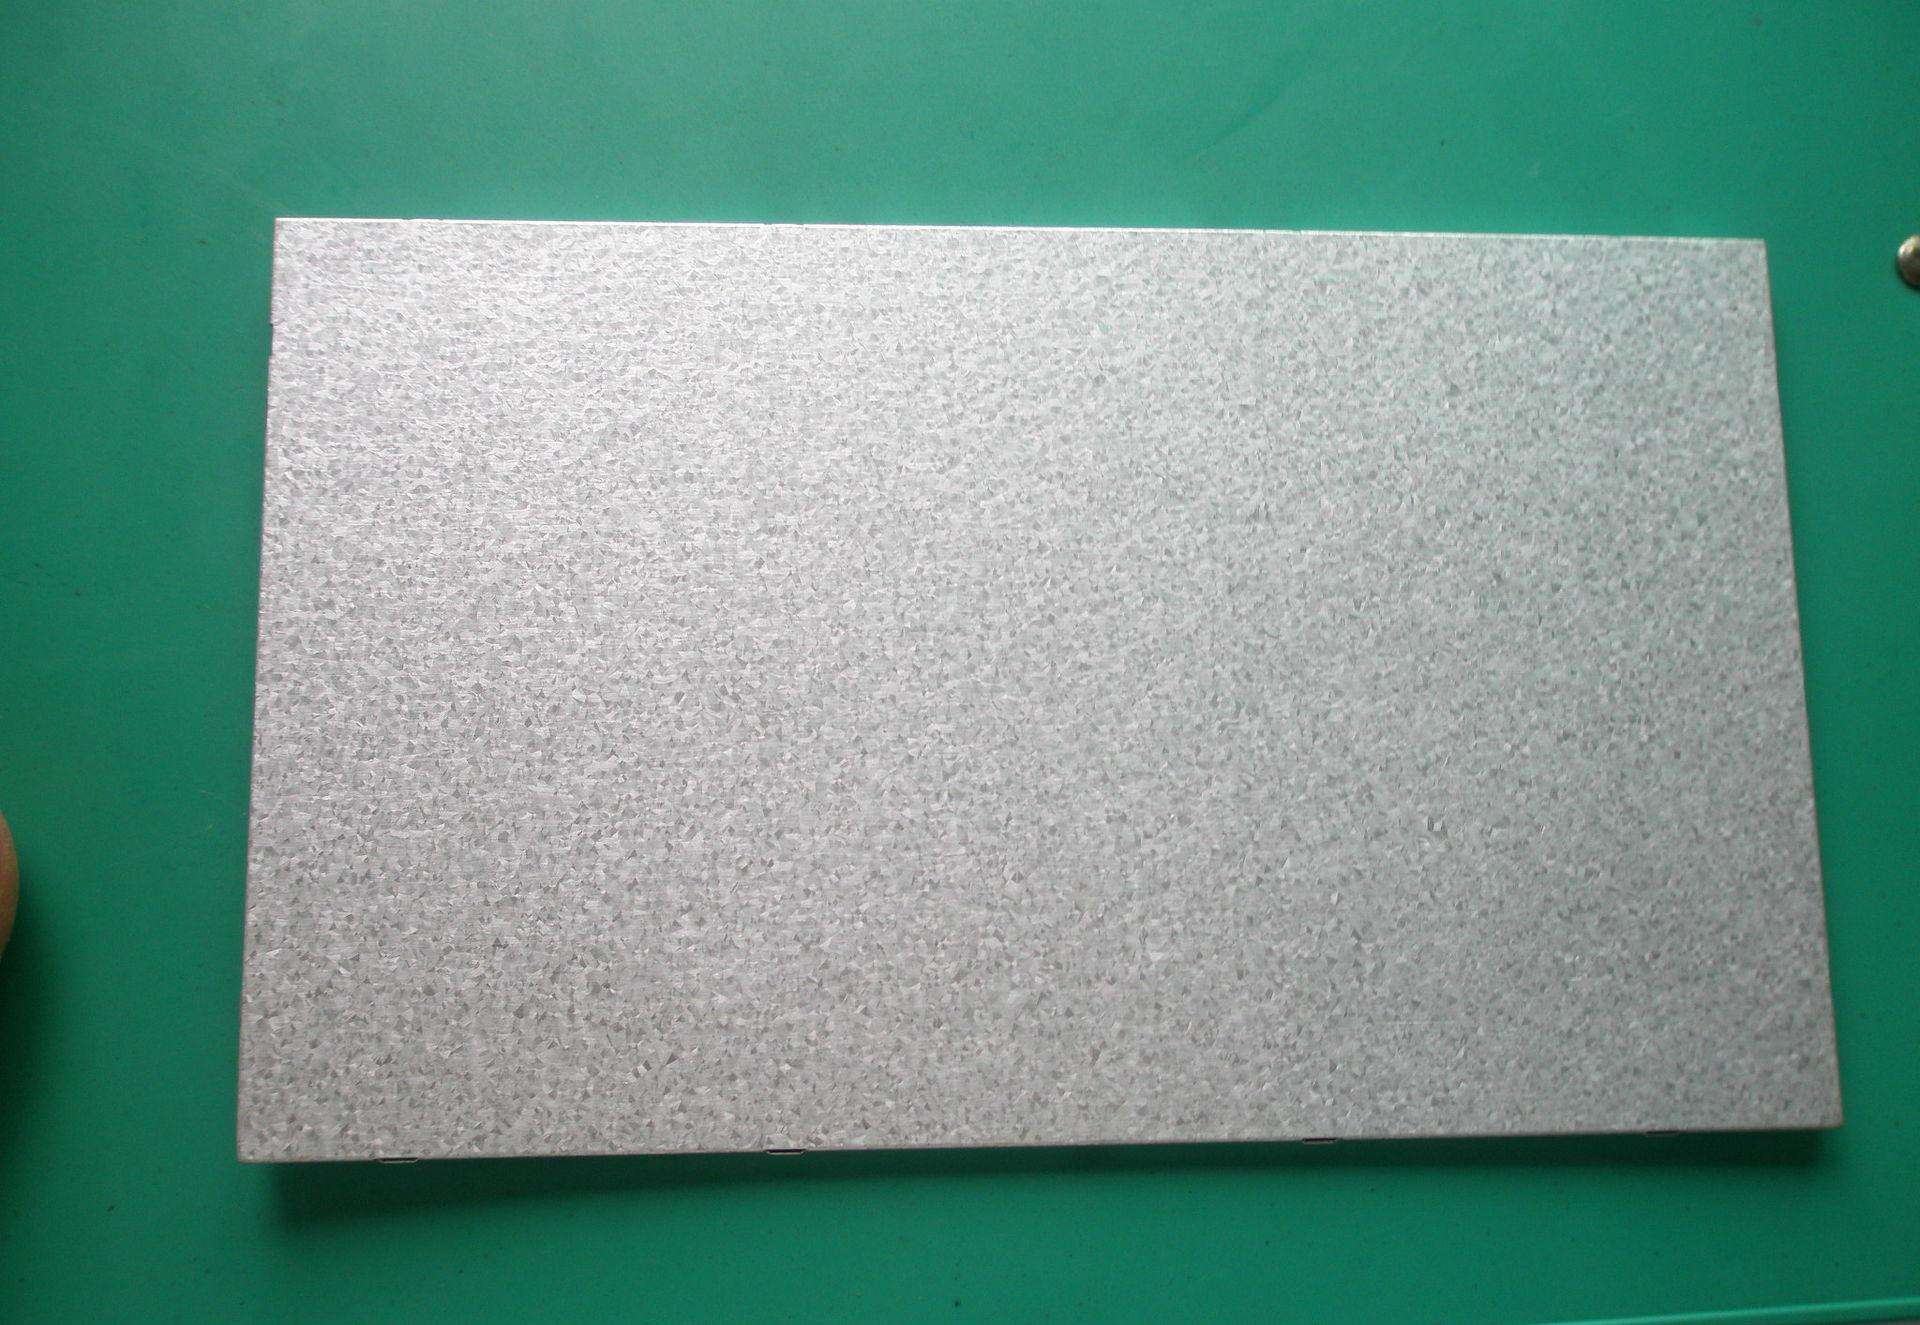 钢镀铝锌 甘肃环保耐指纹板供应商